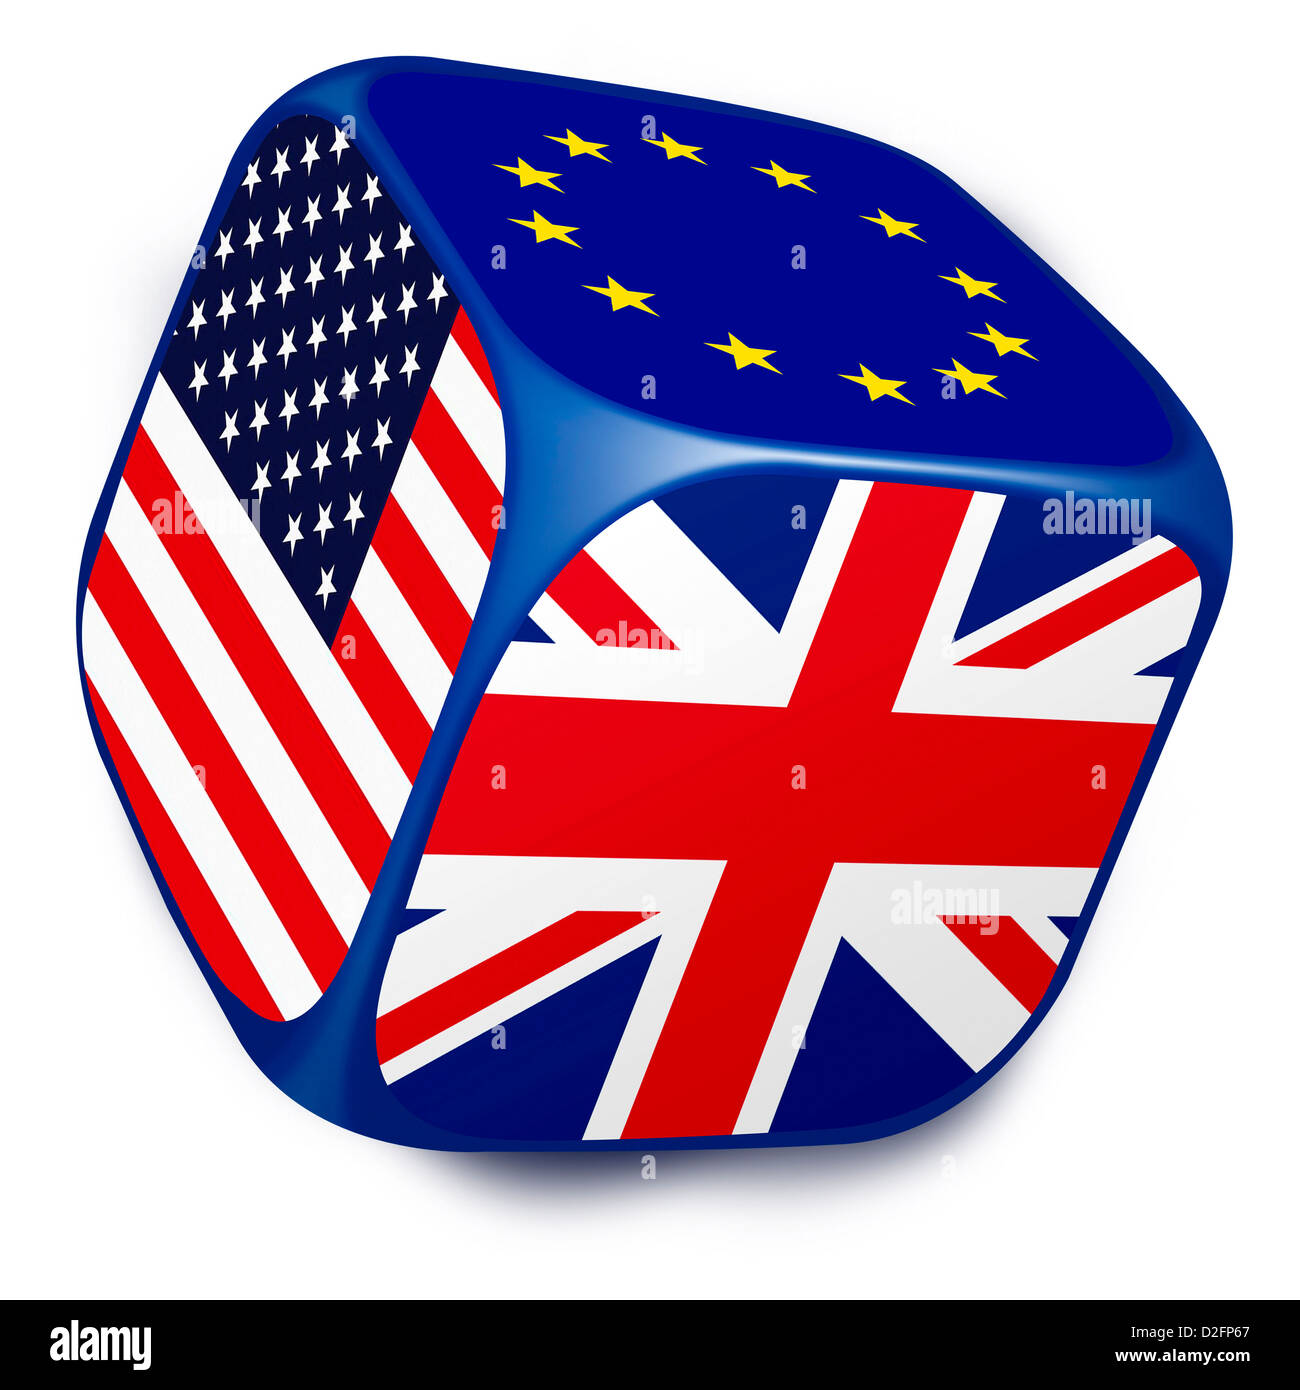 Würfel mit den Flaggen der Europäischen Union, Großbritannien und Vereinigte Staaten von Amerika auf jeder ihrer Seiten - NATO-Staaten Stockfoto